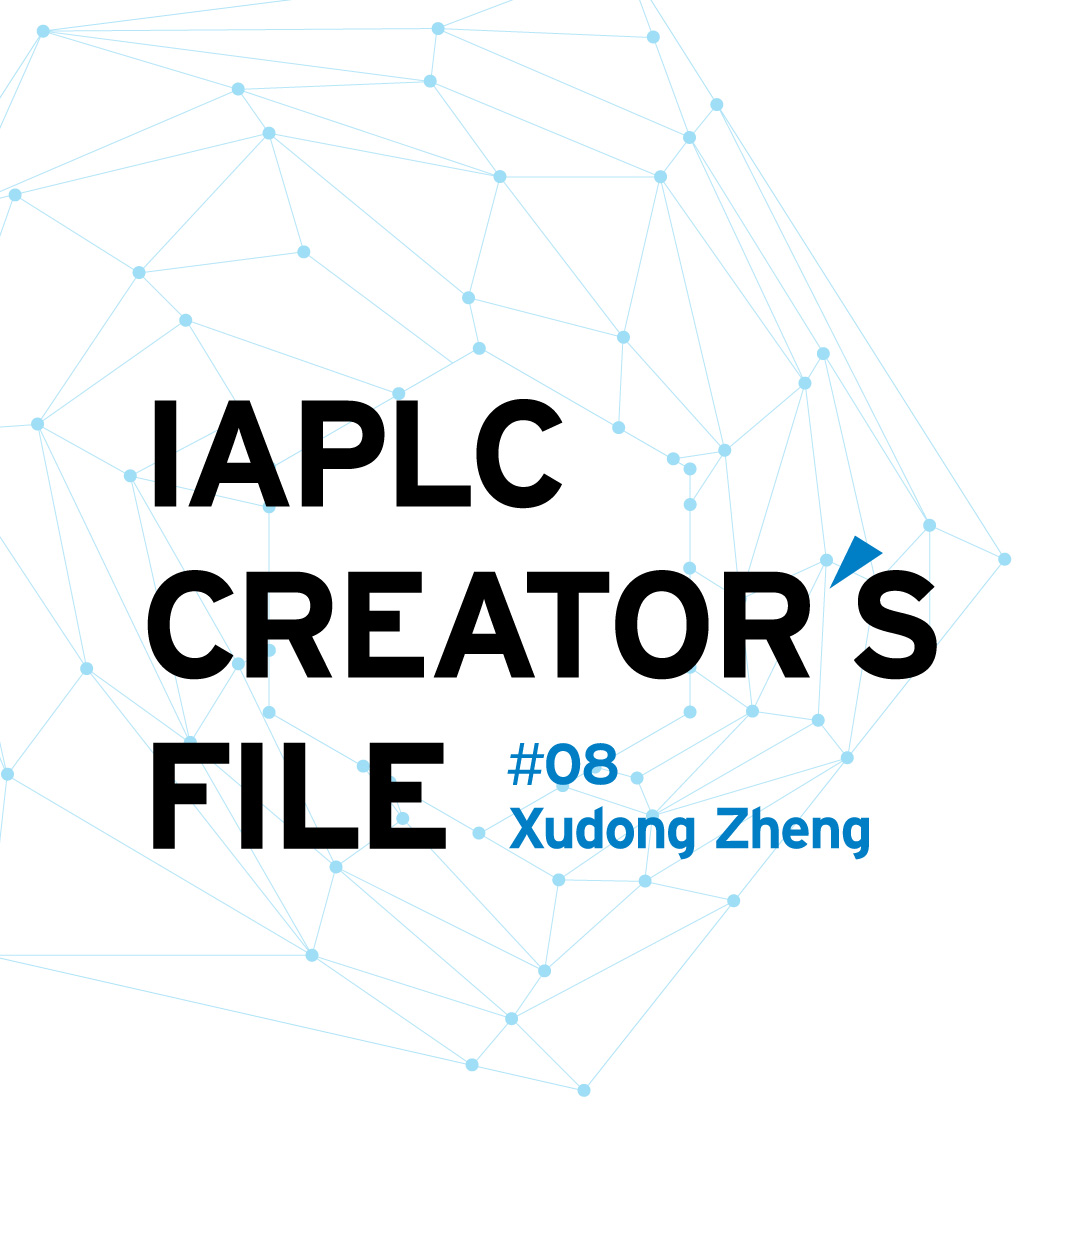 IAPLC CREATOR’S FILE #08 Xudong Zheng